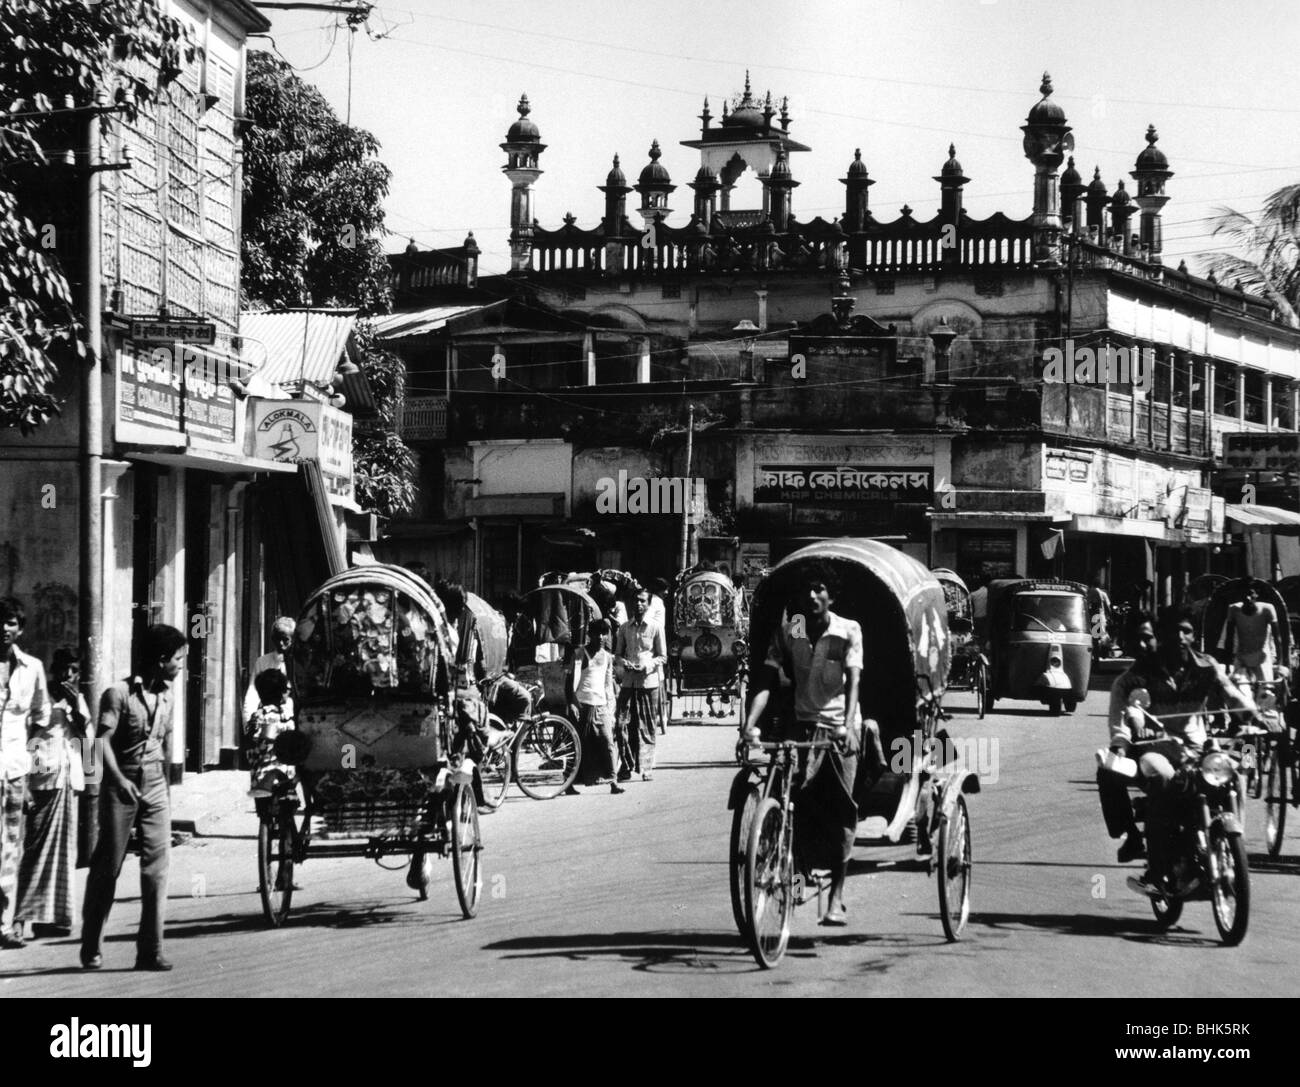 Geografie/Reisen, Bangladesch, Dhaka, Straßenszenen, dreirädrige Rickshaws in einer Straße, im Hintergrund eine Moschee, 1980, Stockfoto